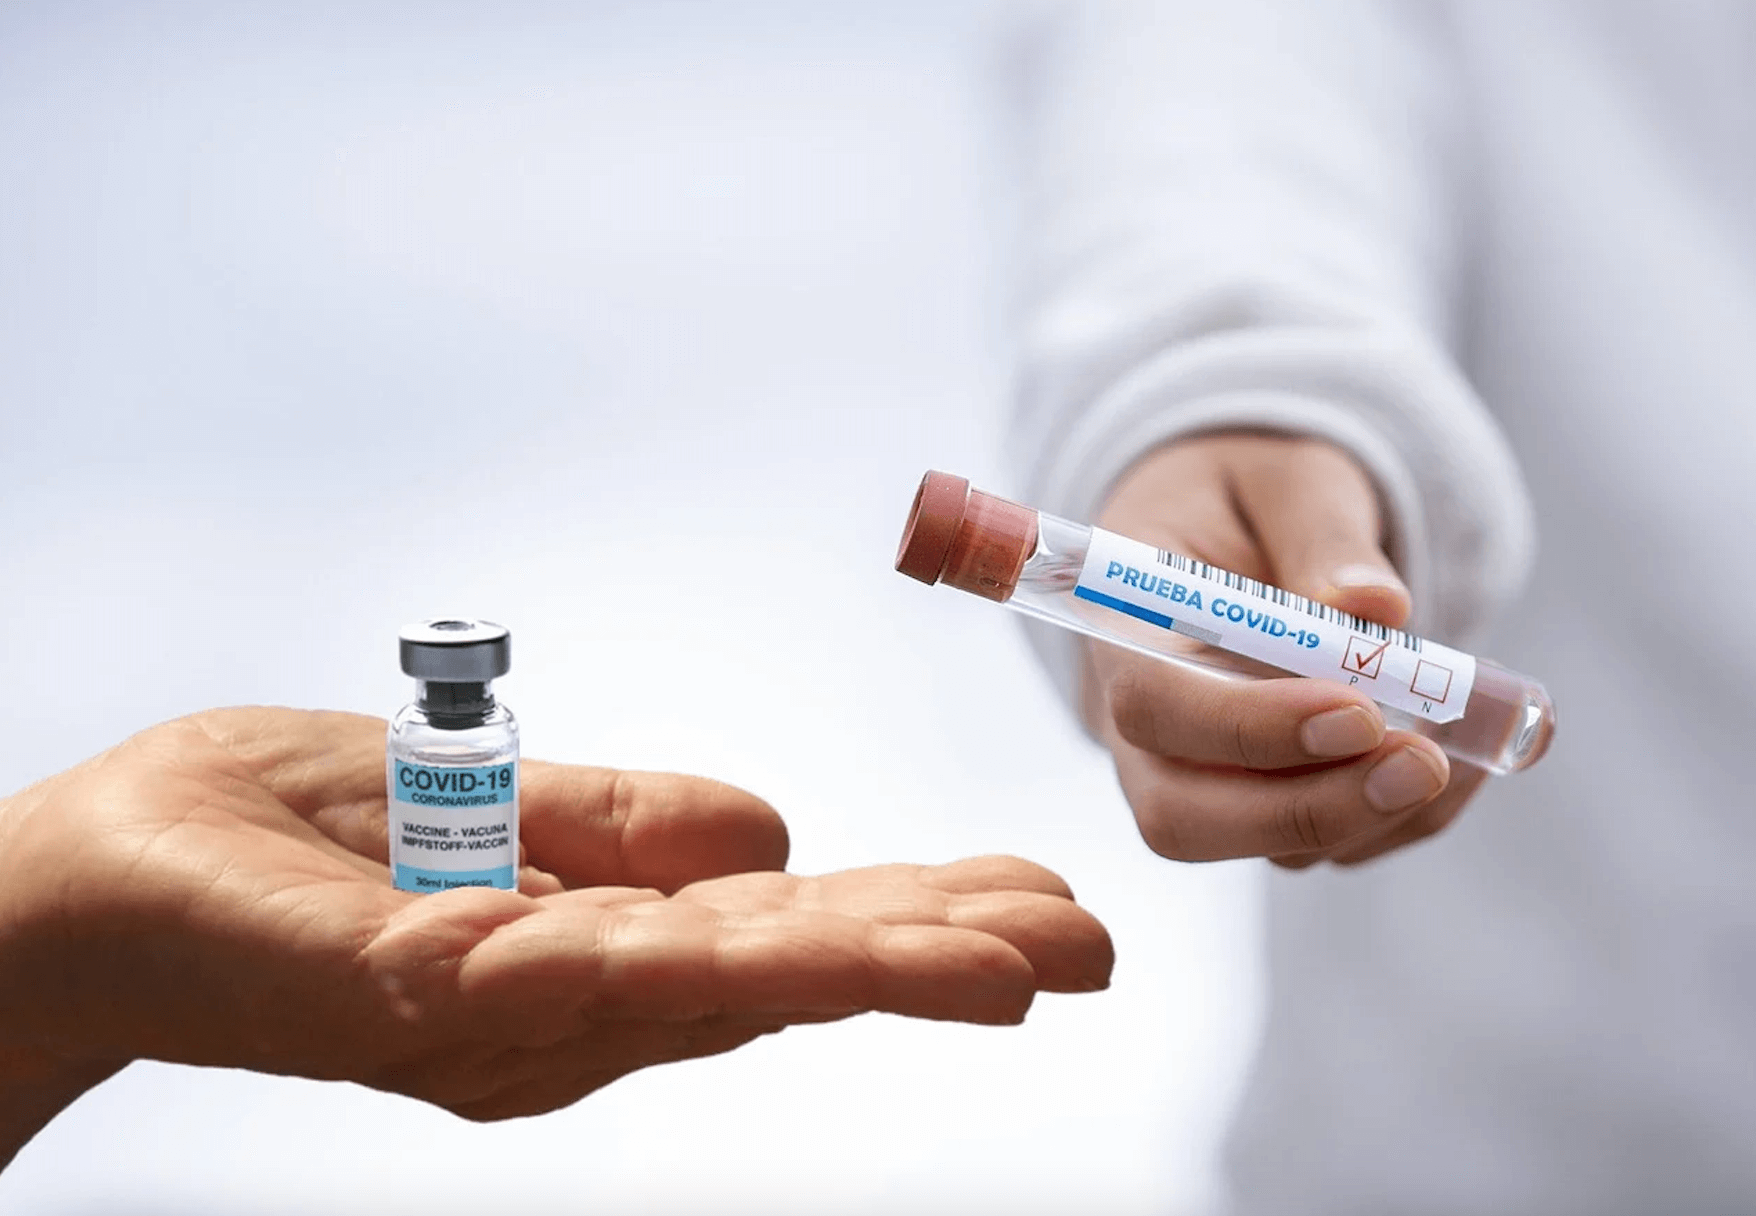 复活节前的五种疫苗 - 疫苗瓶和测试